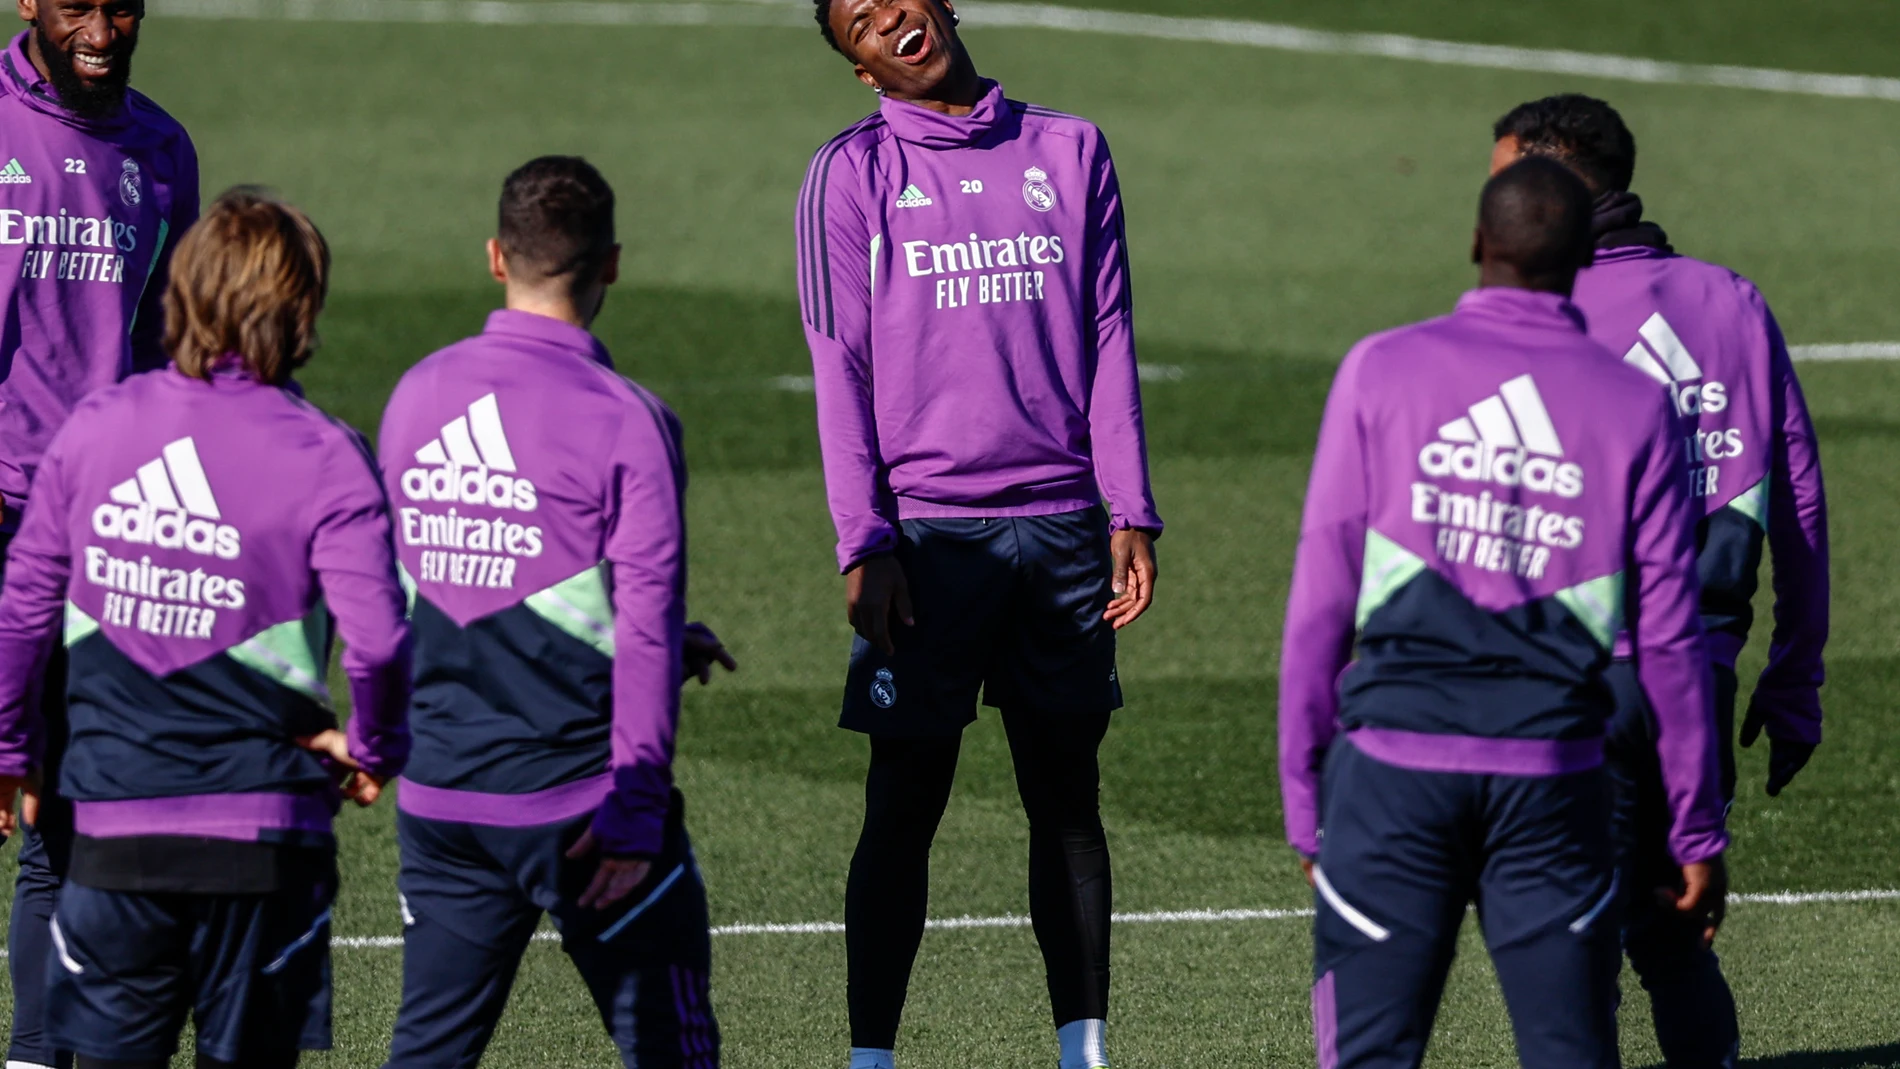 El Real Madrid ha reaccionado al muñeco que representaba a Vinicius colgado de un puente